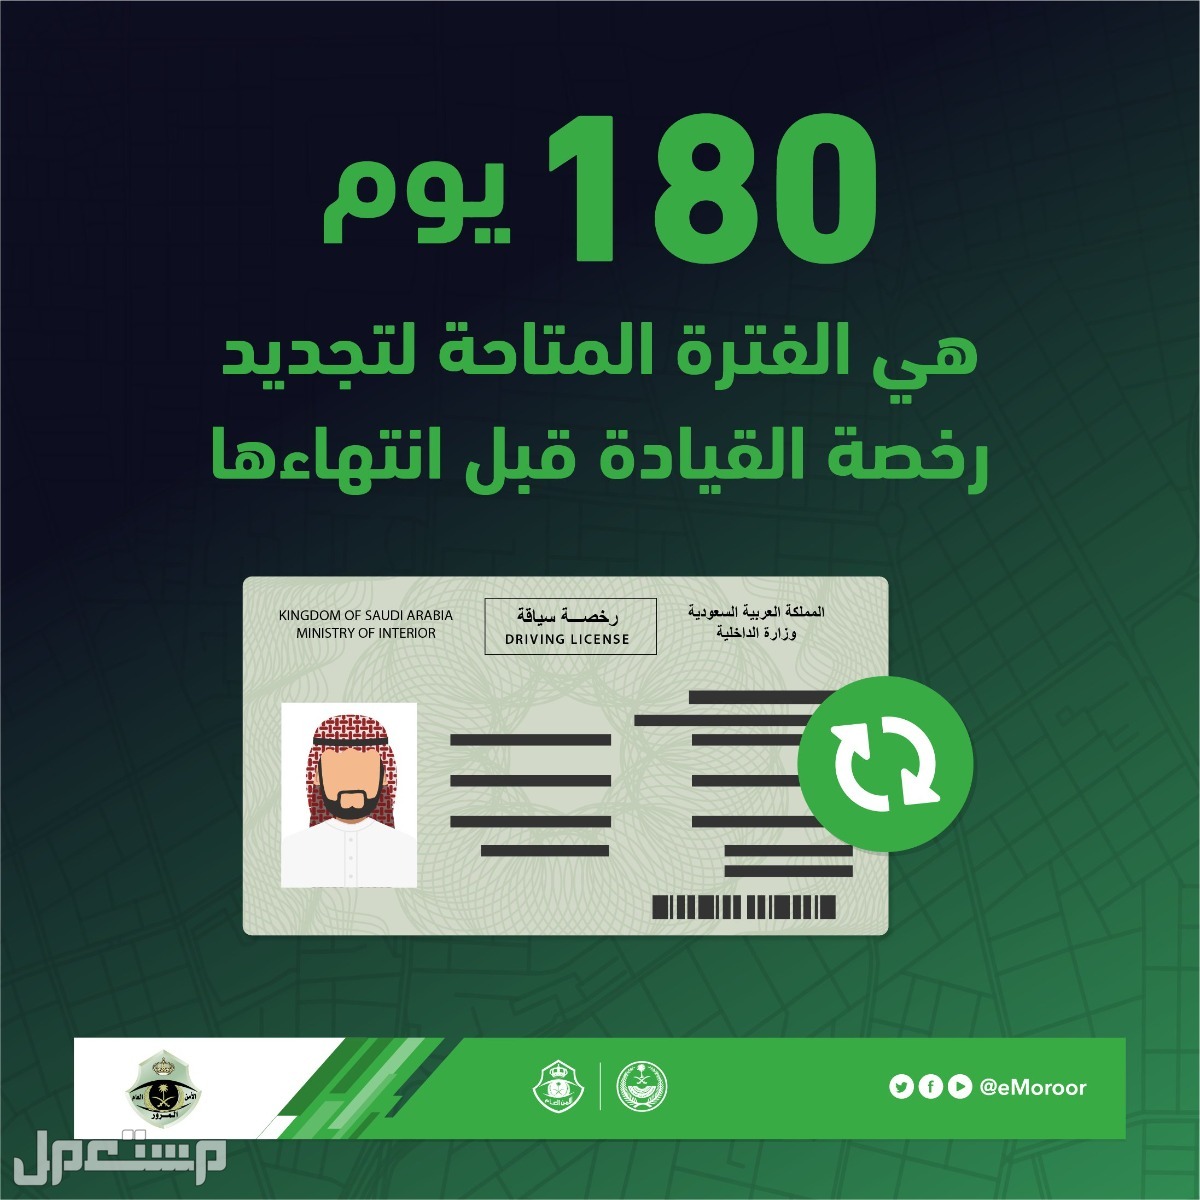 هل يمكن تجديد رخصة القيادة بدون فحص النظر؟ "المرور" يوضح في الإمارات العربية المتحدة